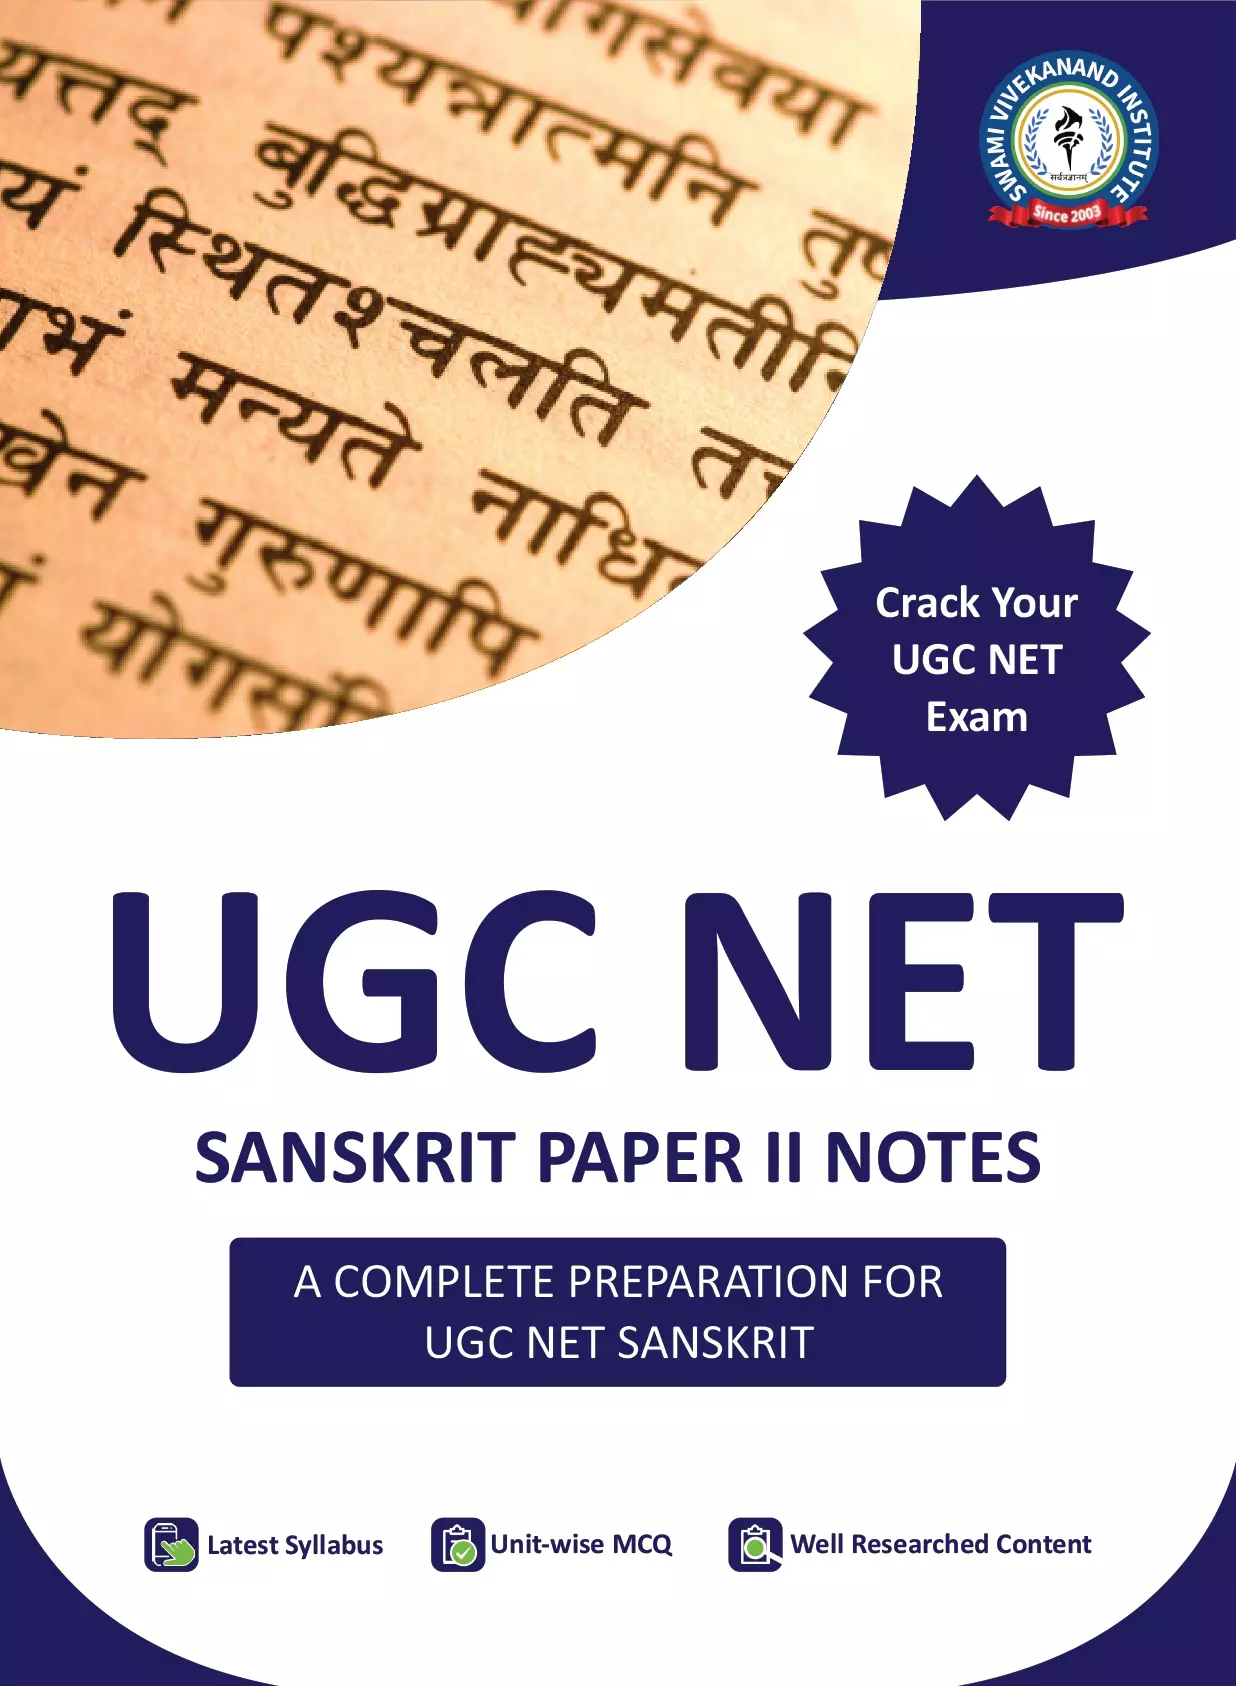 UGC NET SANSKRIT PAPER 2 NOTES